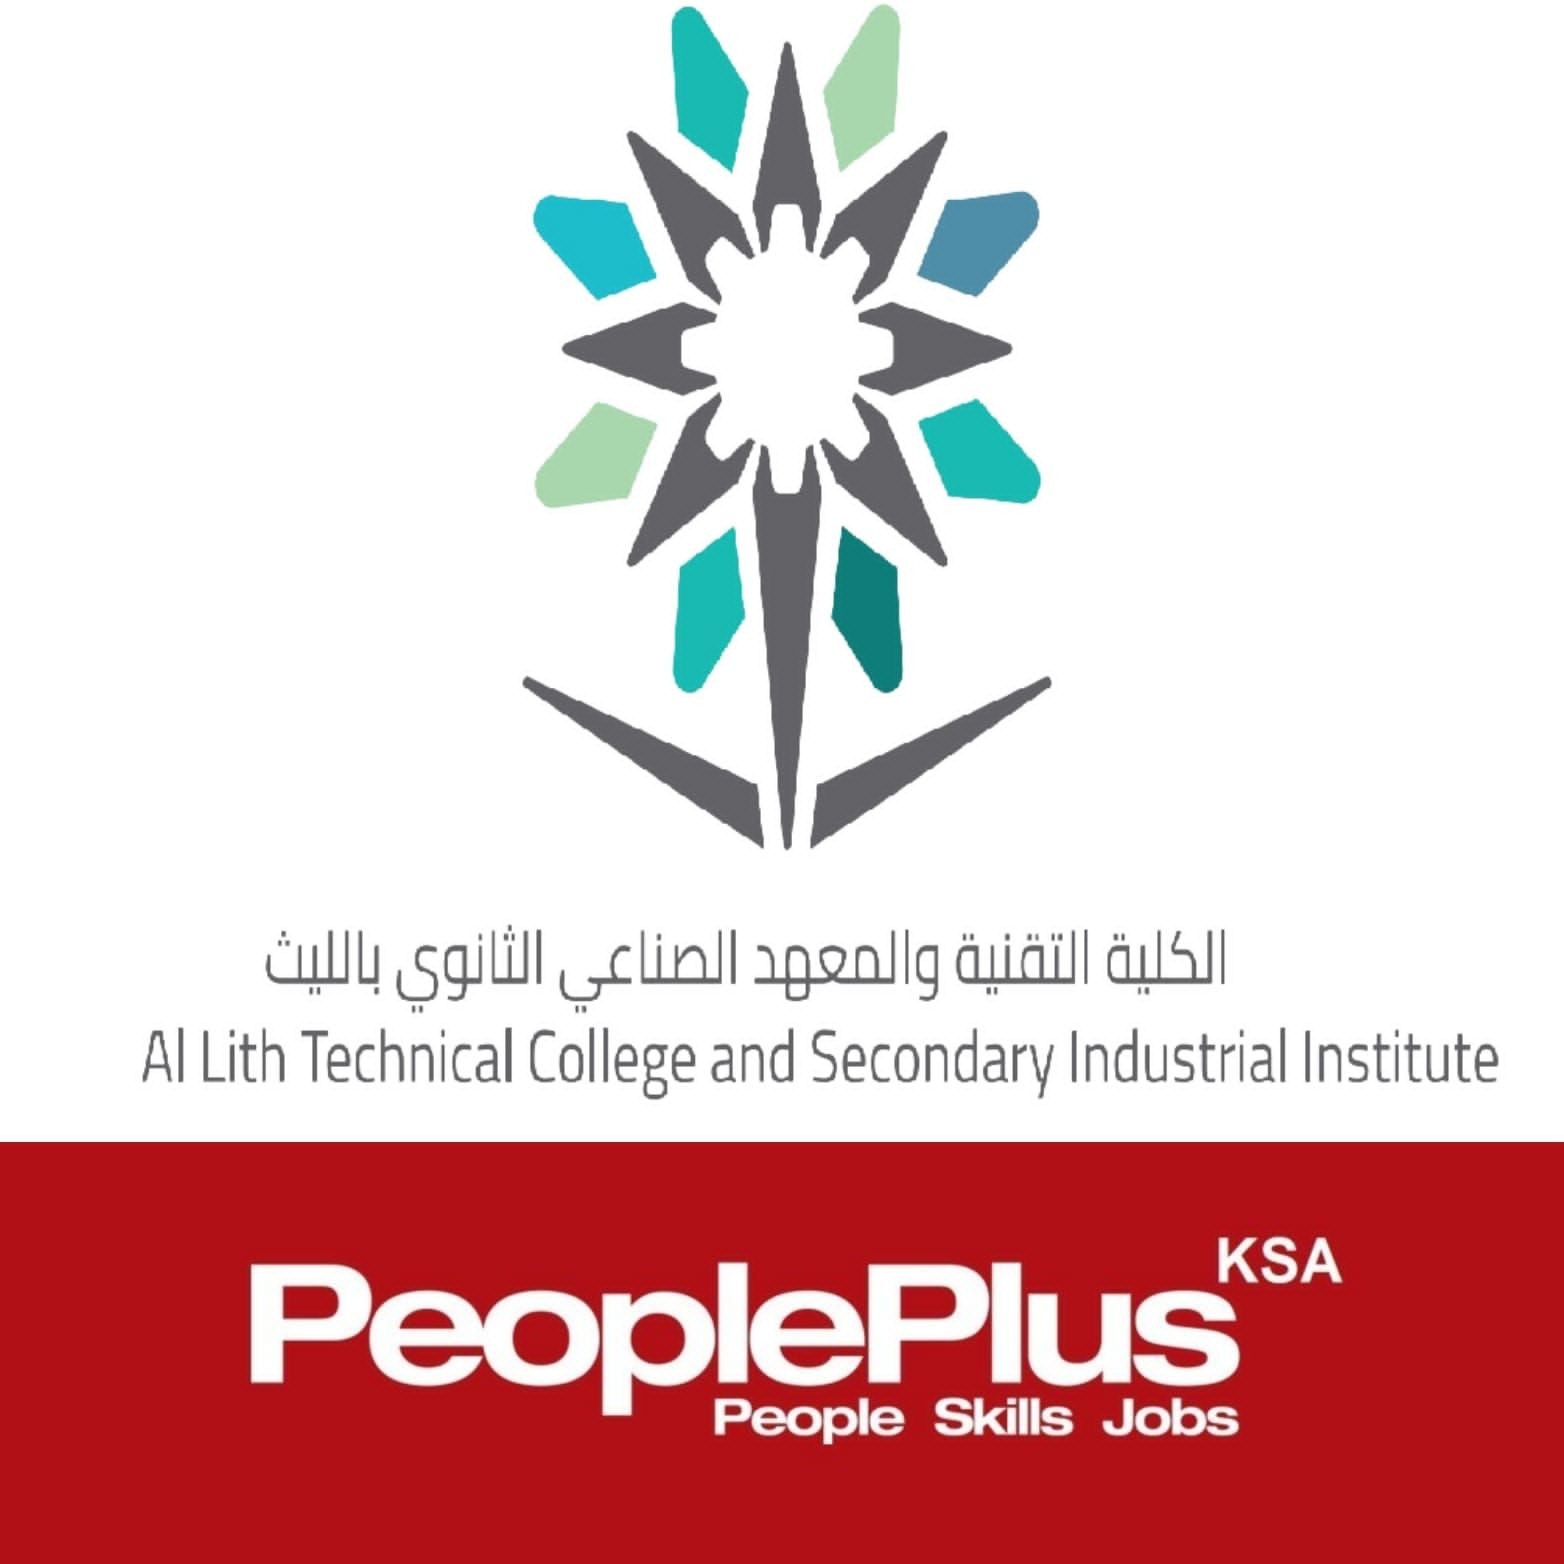 تقنية الليث بالشراكة مع People Plus KSA تعلن عن أكثر من 200 وظيفة للخريجين